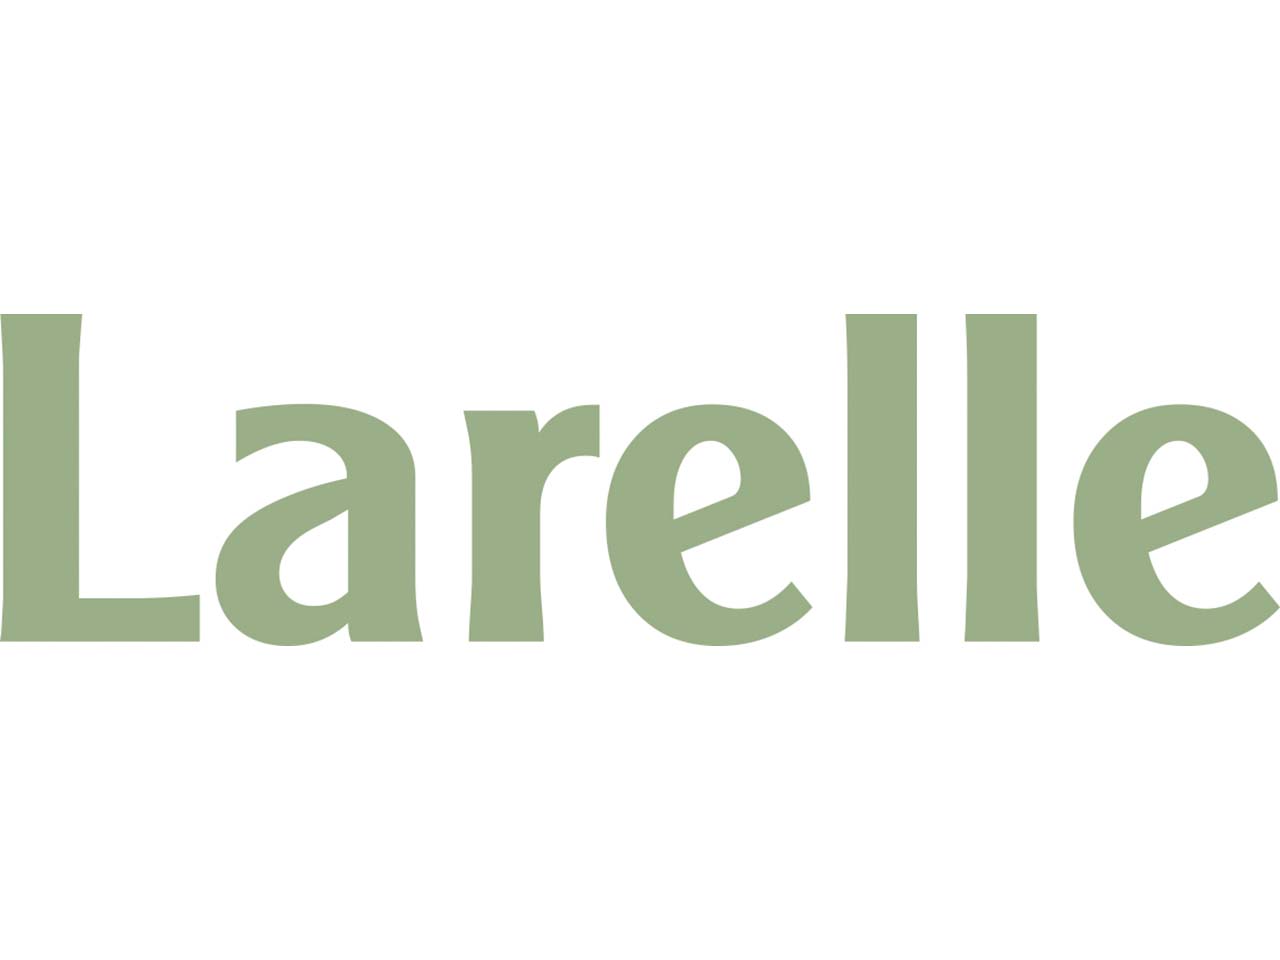 Larelle